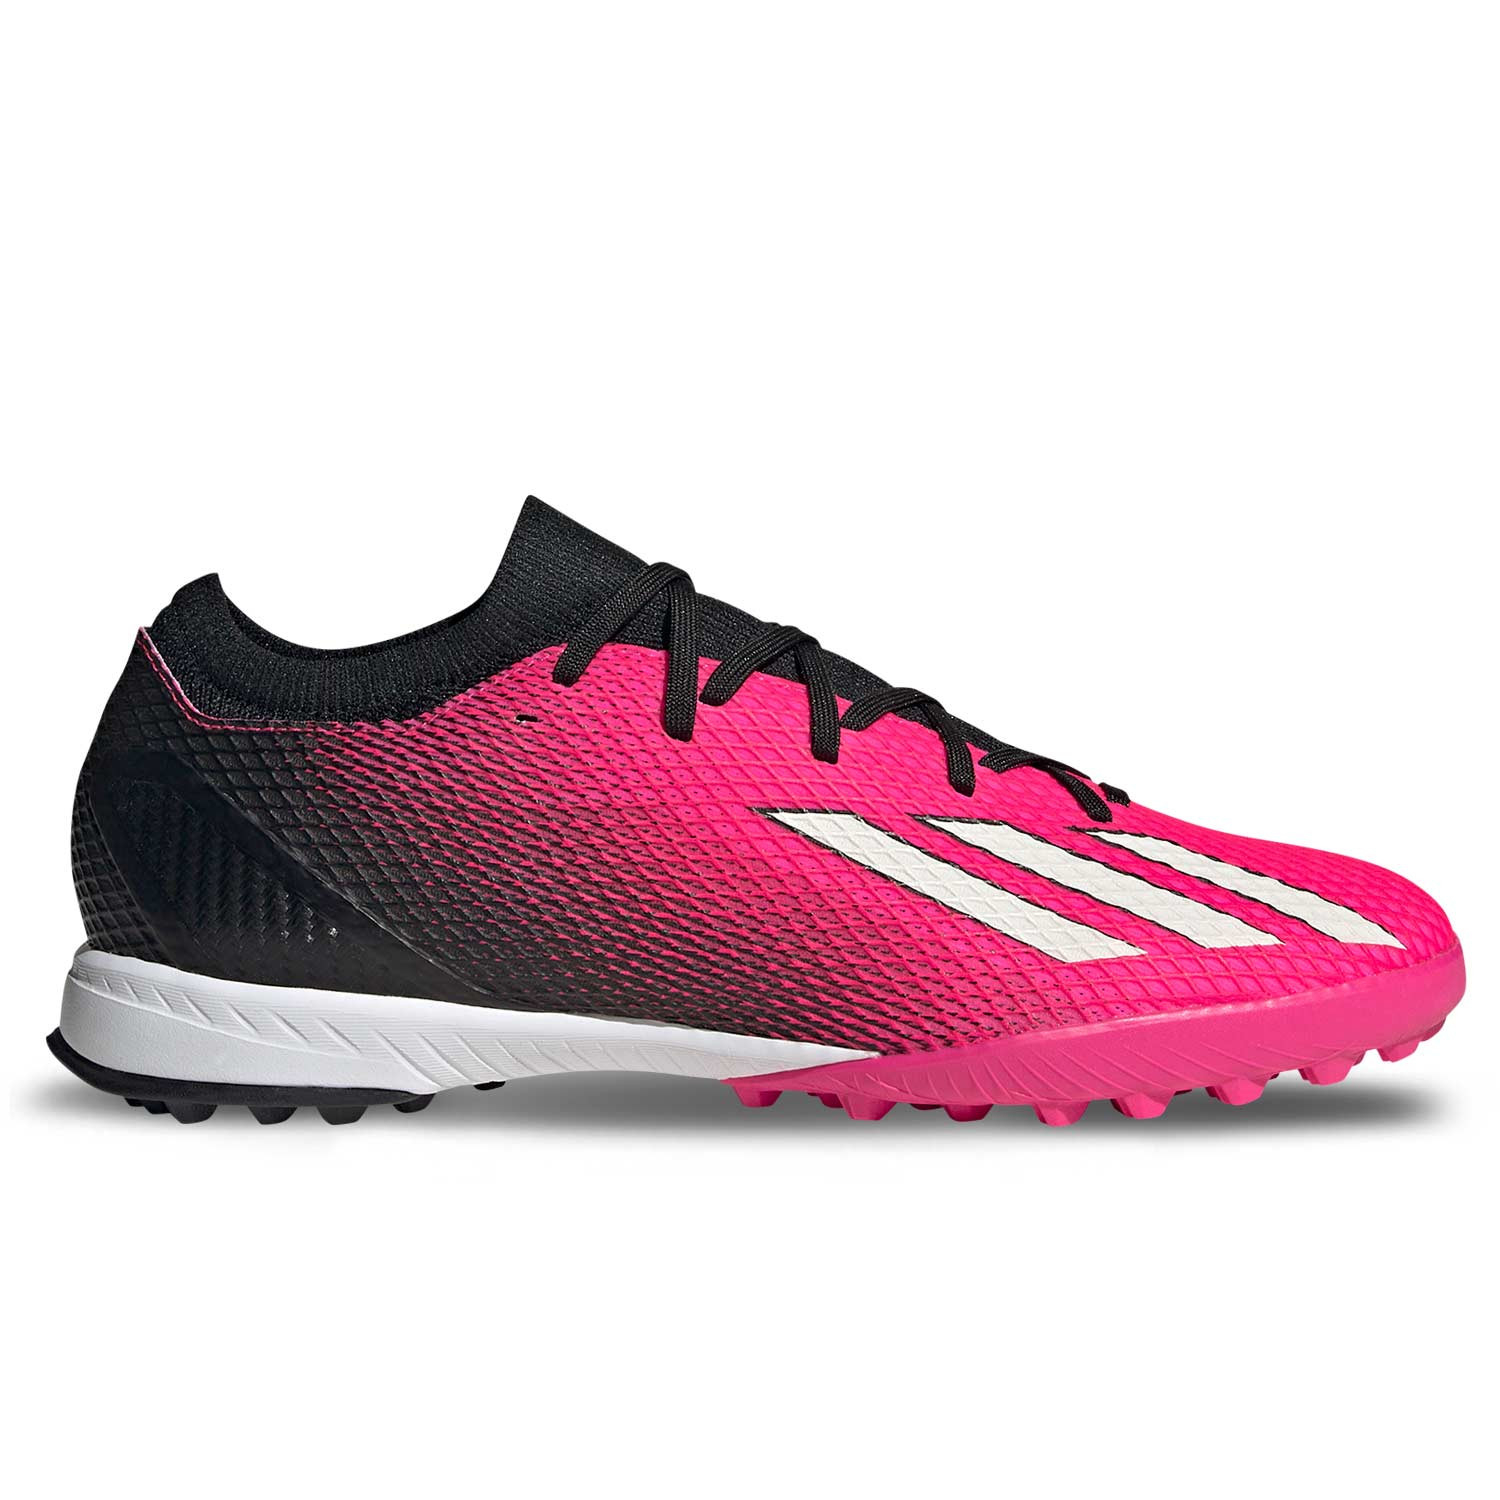 compra zapatilla de futbol Turf Adidas económica on line